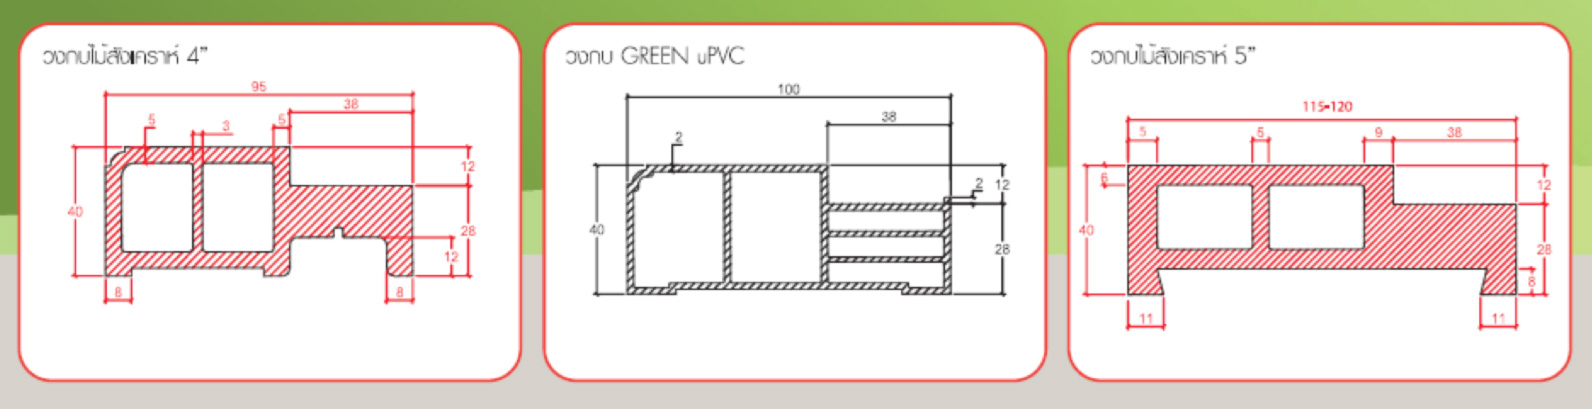 วงกบ UPVC, วงกบไม้สังเคราะห์ WPVC, วงกบ ADJUST GREEN PLASTWOOD Dimension